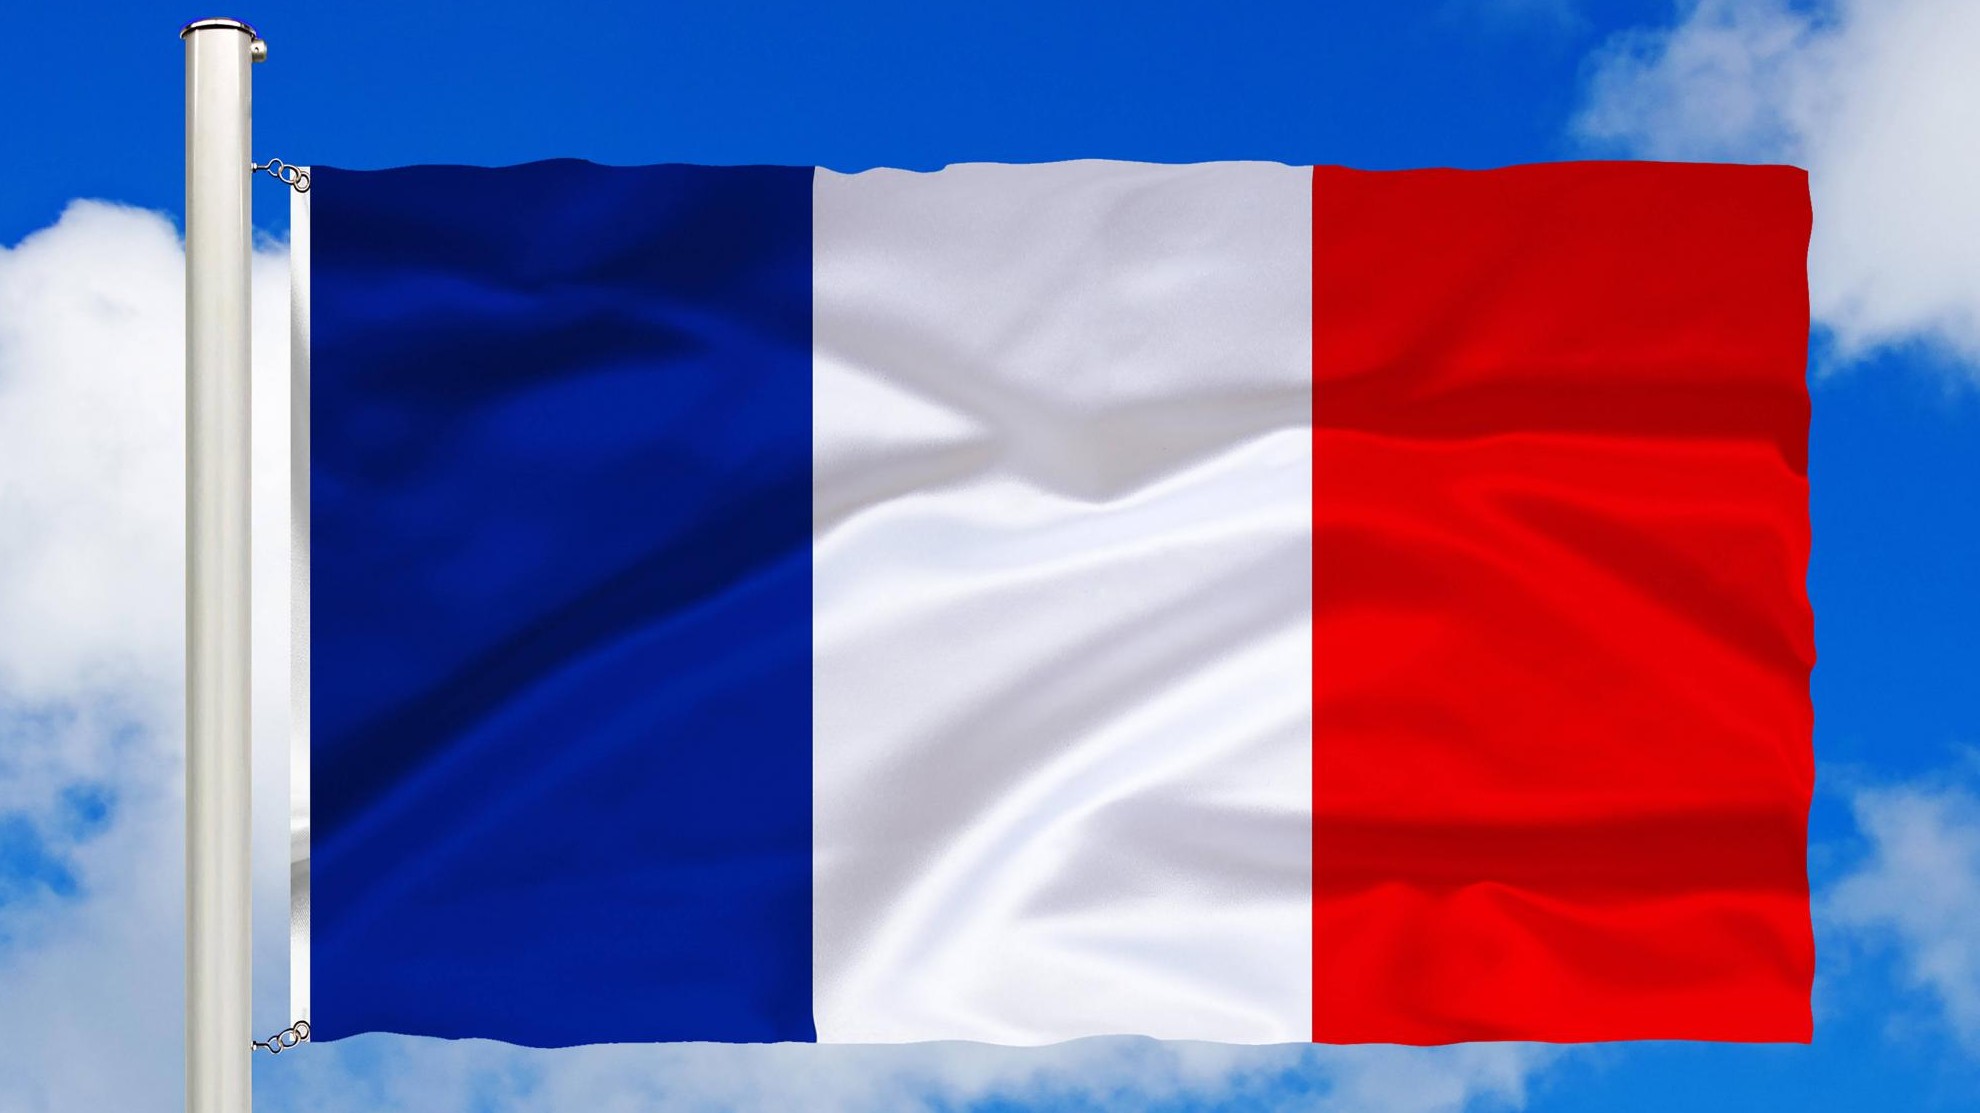 Frankreich – Atomaufsicht gibt Entwarnung nach Brand in Uran-Anlage